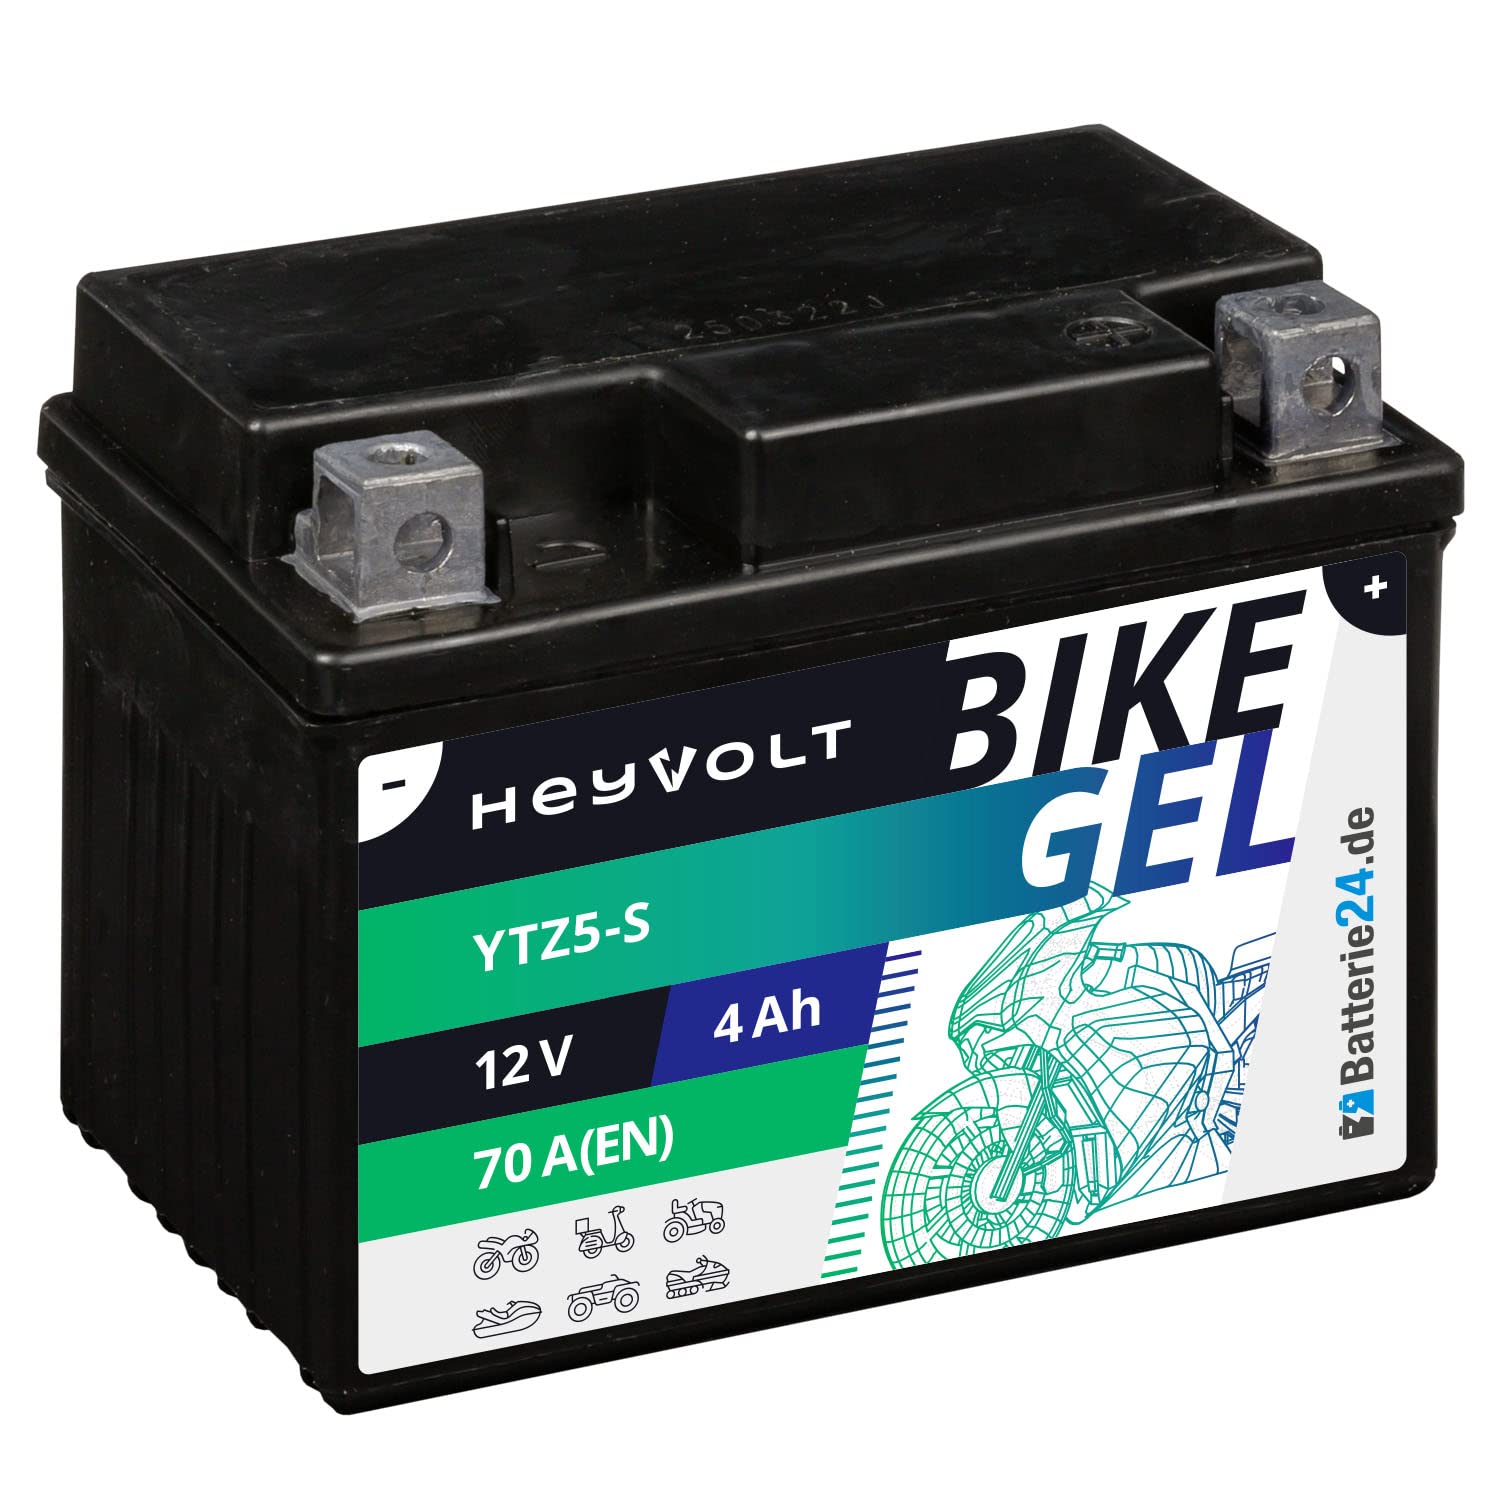 HeyVolt GEL Motorradbatterie 12V 4Ah YTZ5-S JMTZ5S Starter Roller Quad ATV Batterie von Batterie24.de